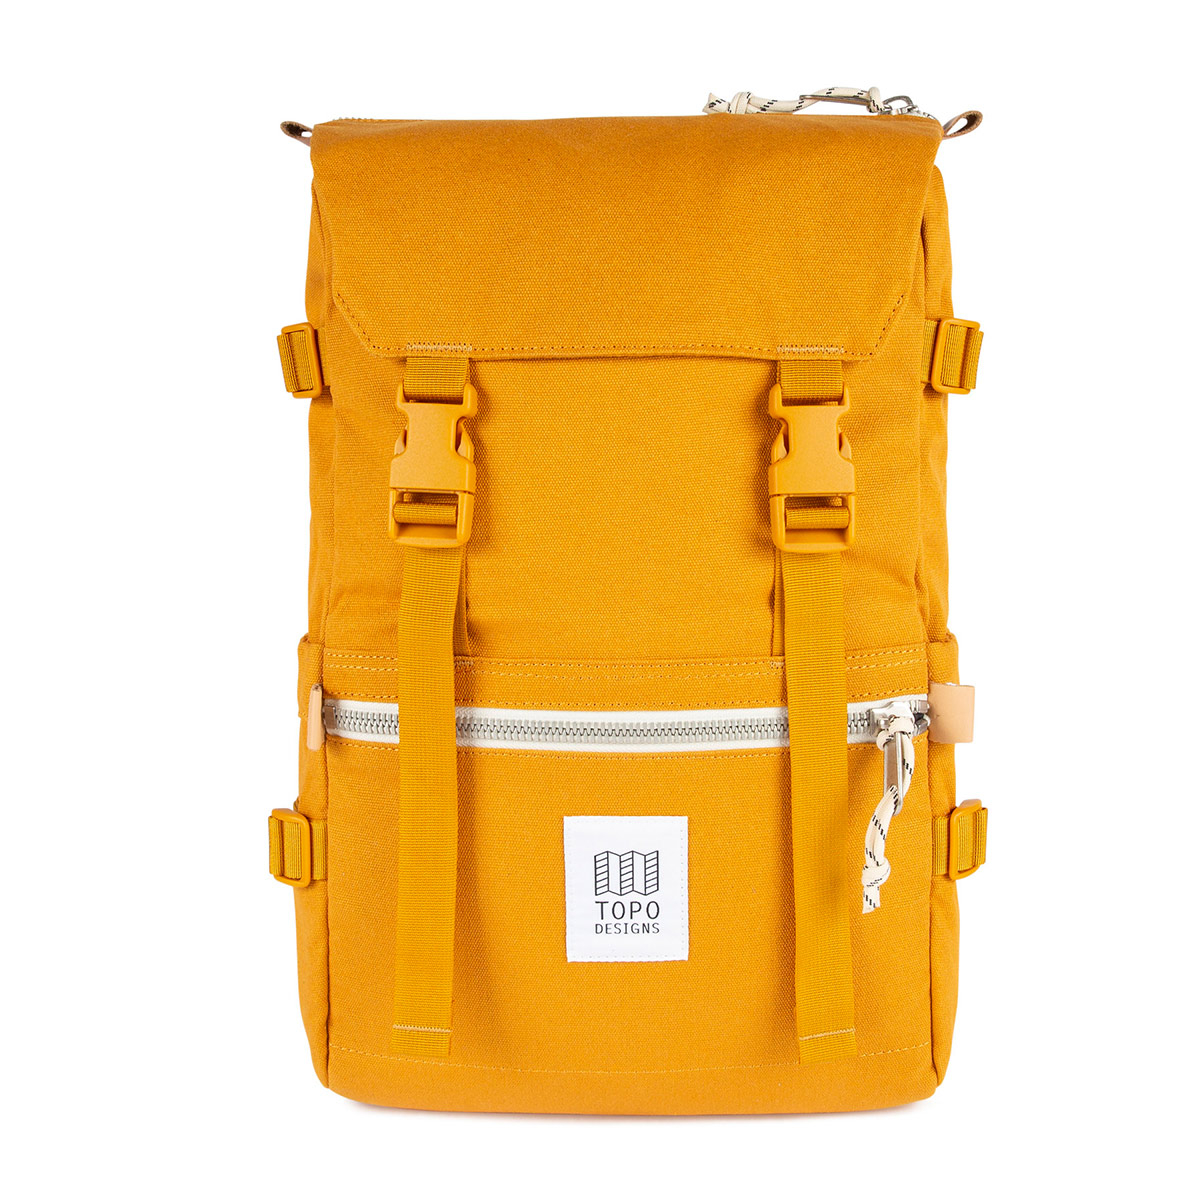 Topo Designs Rover Pack Canvas Mustard, een op de bergen geïnspireerde rugzak ontmoet urban city stijl.